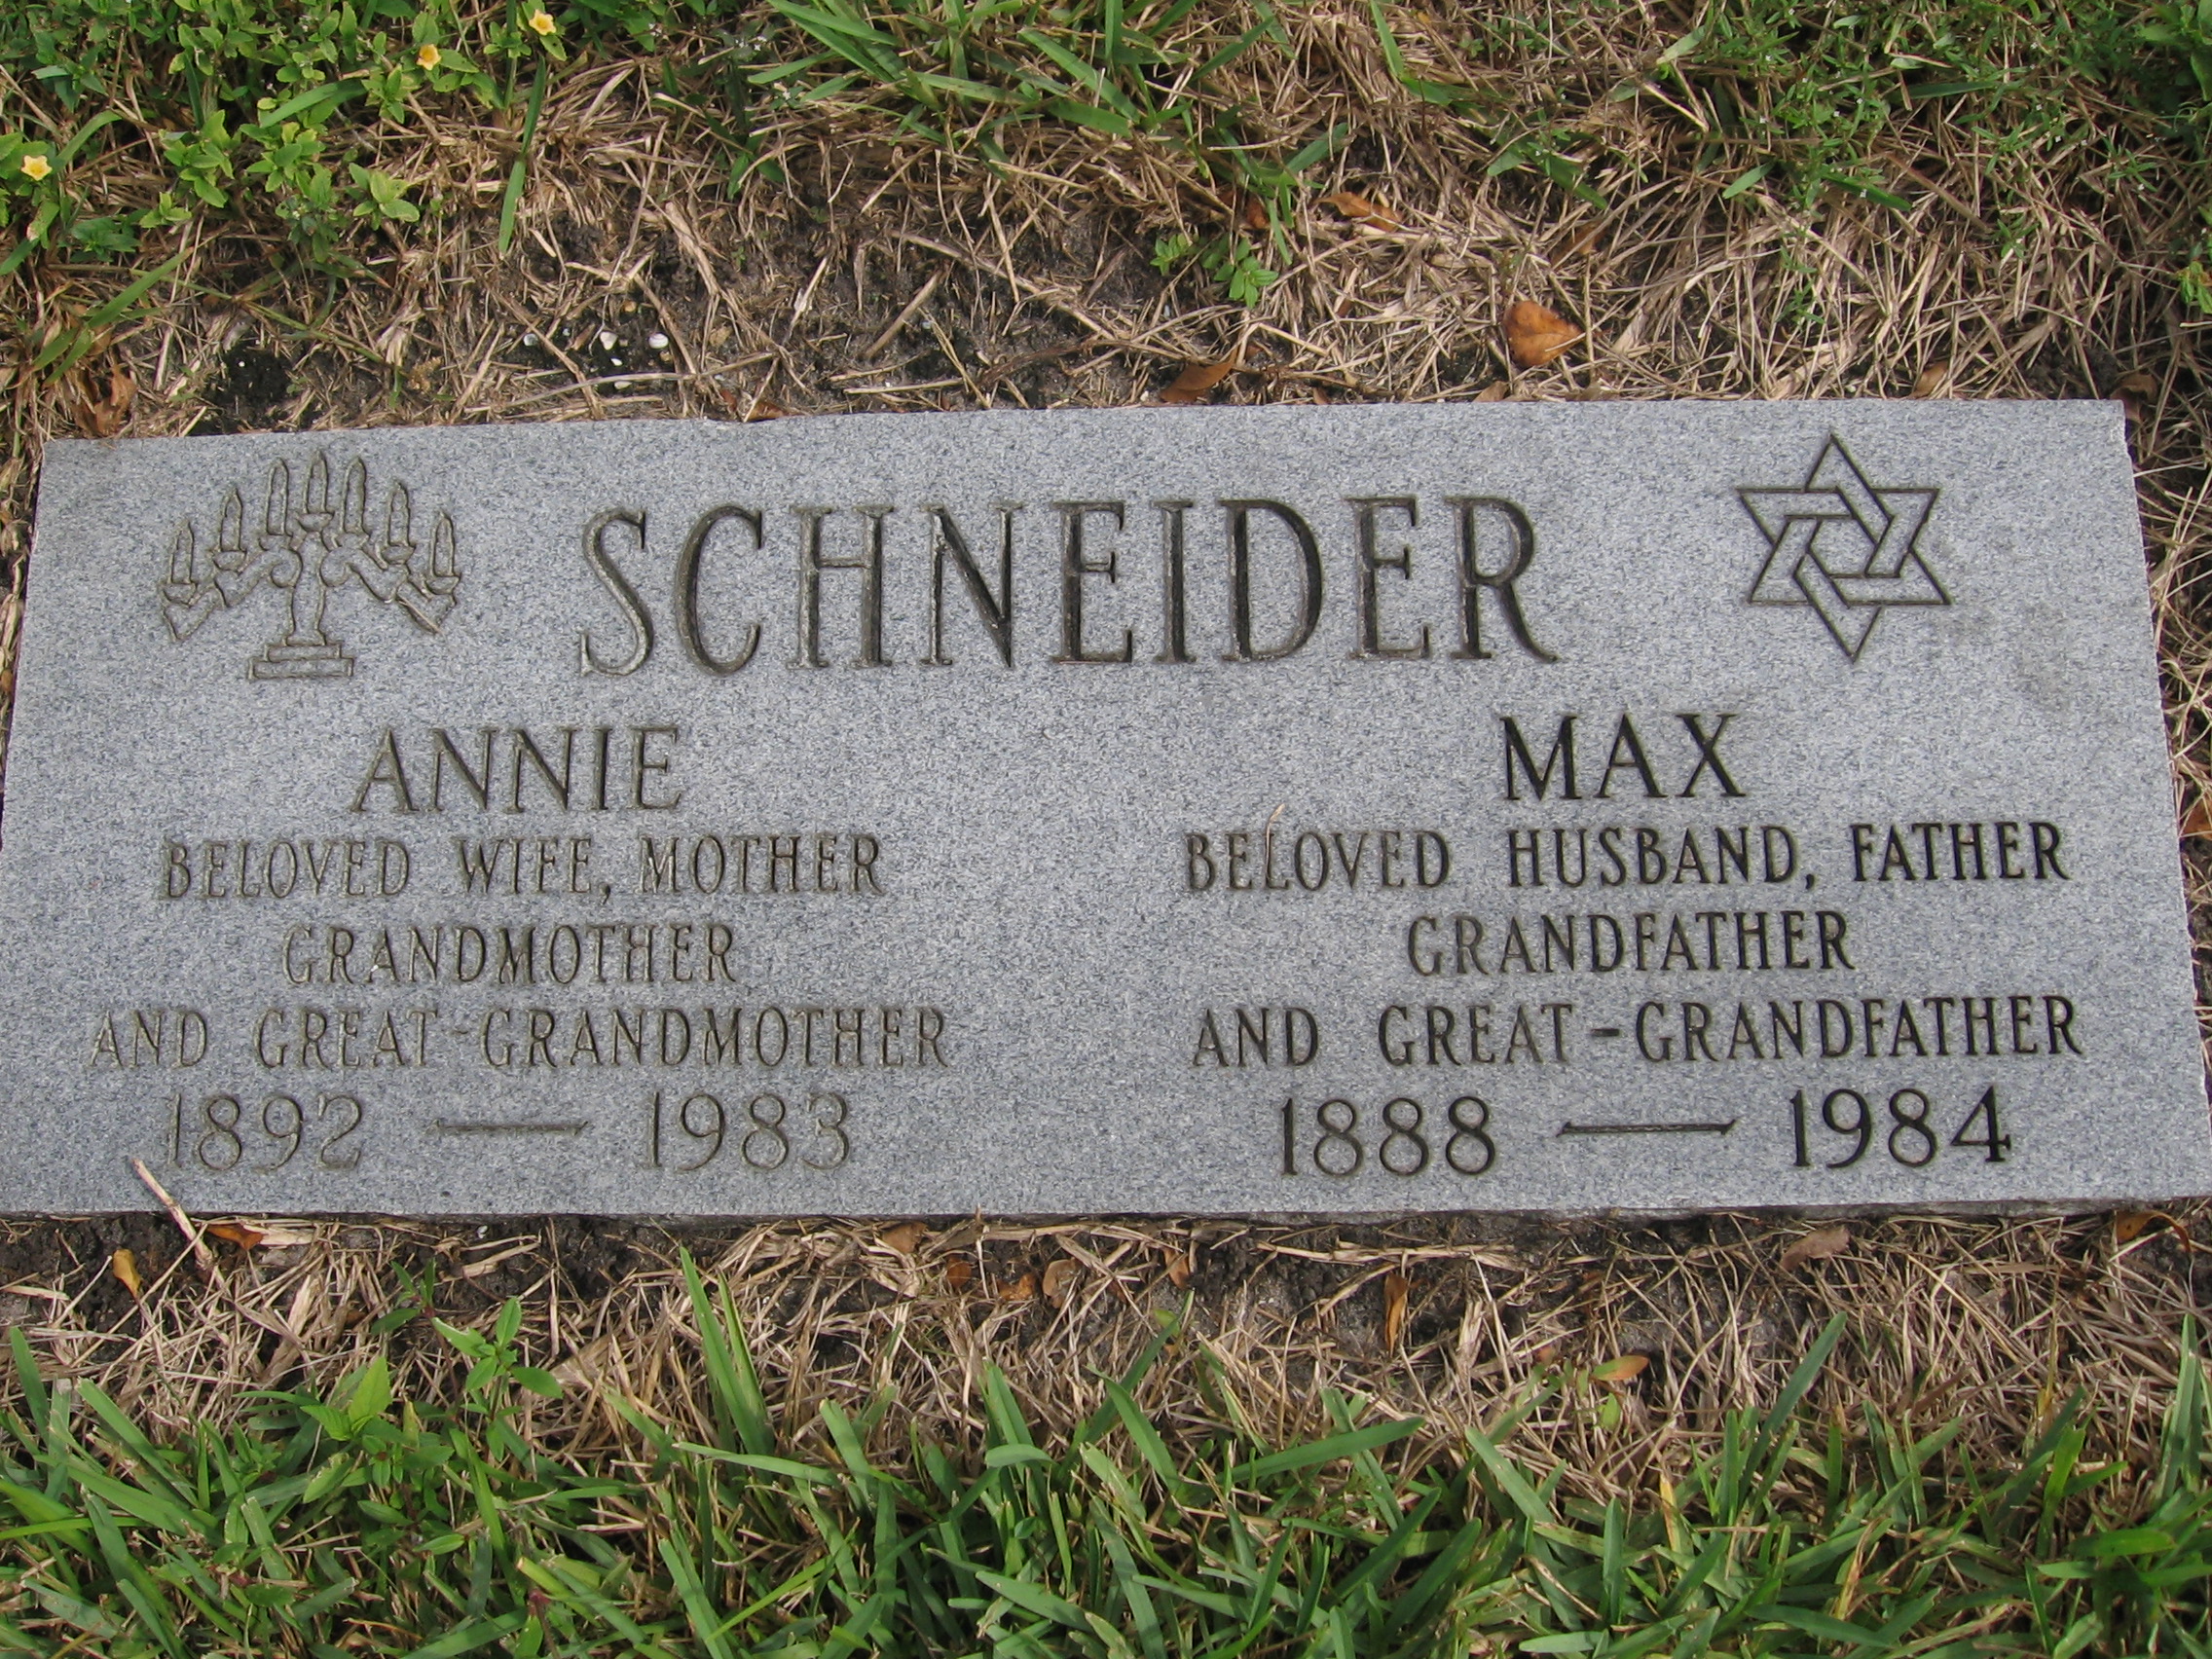 Annie Schneider